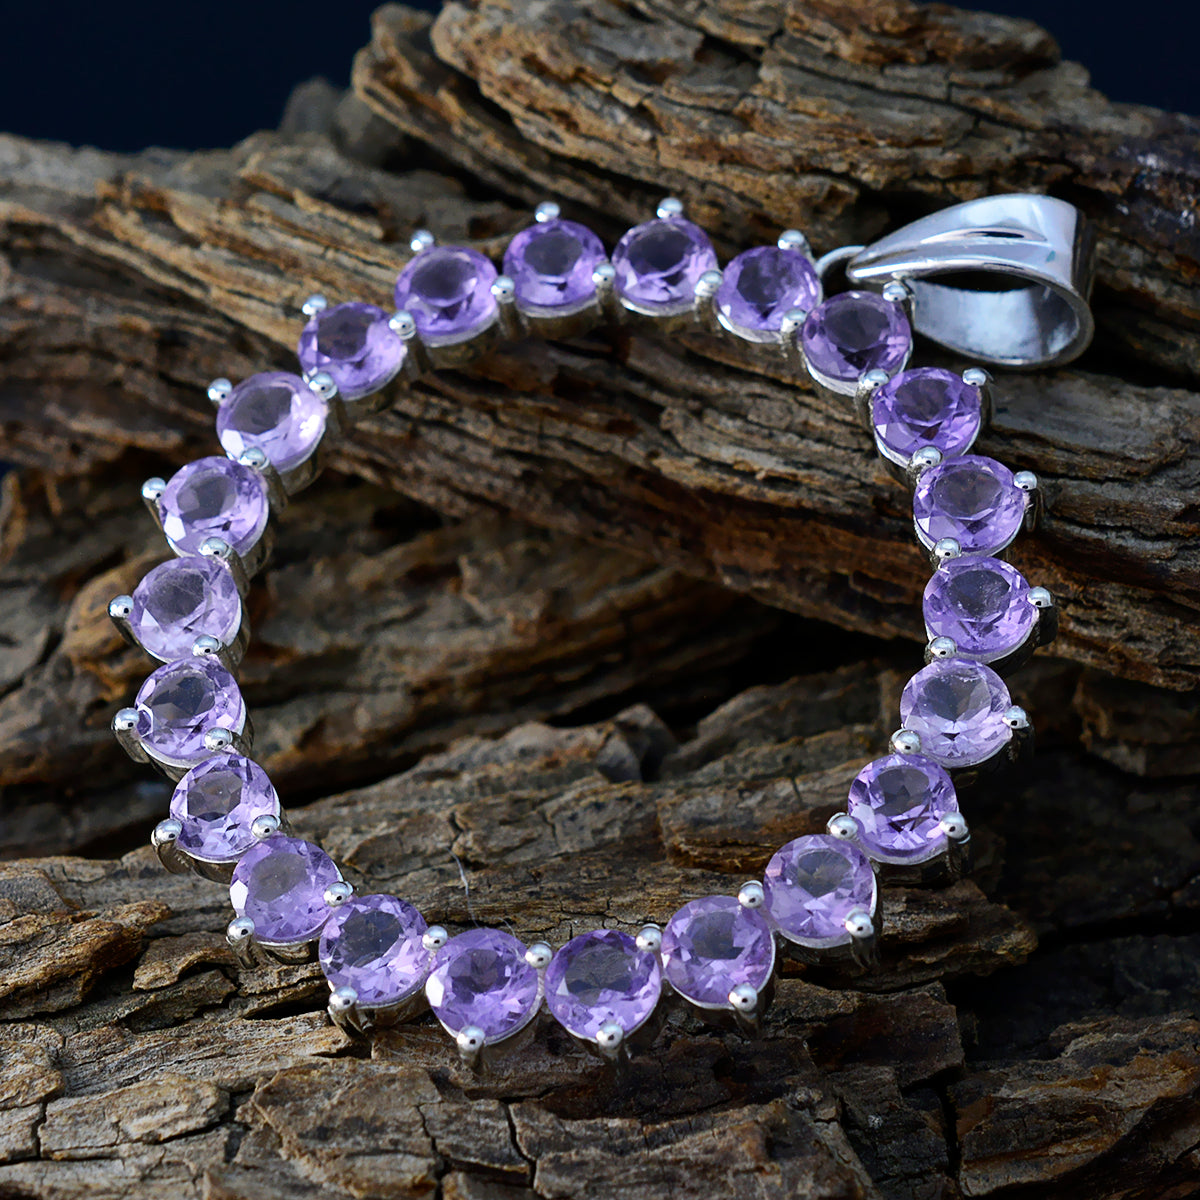 Riyo – pendentif rond en argent, améthyste violette à facettes, jolies pierres précieuses, cadeau de fiançailles